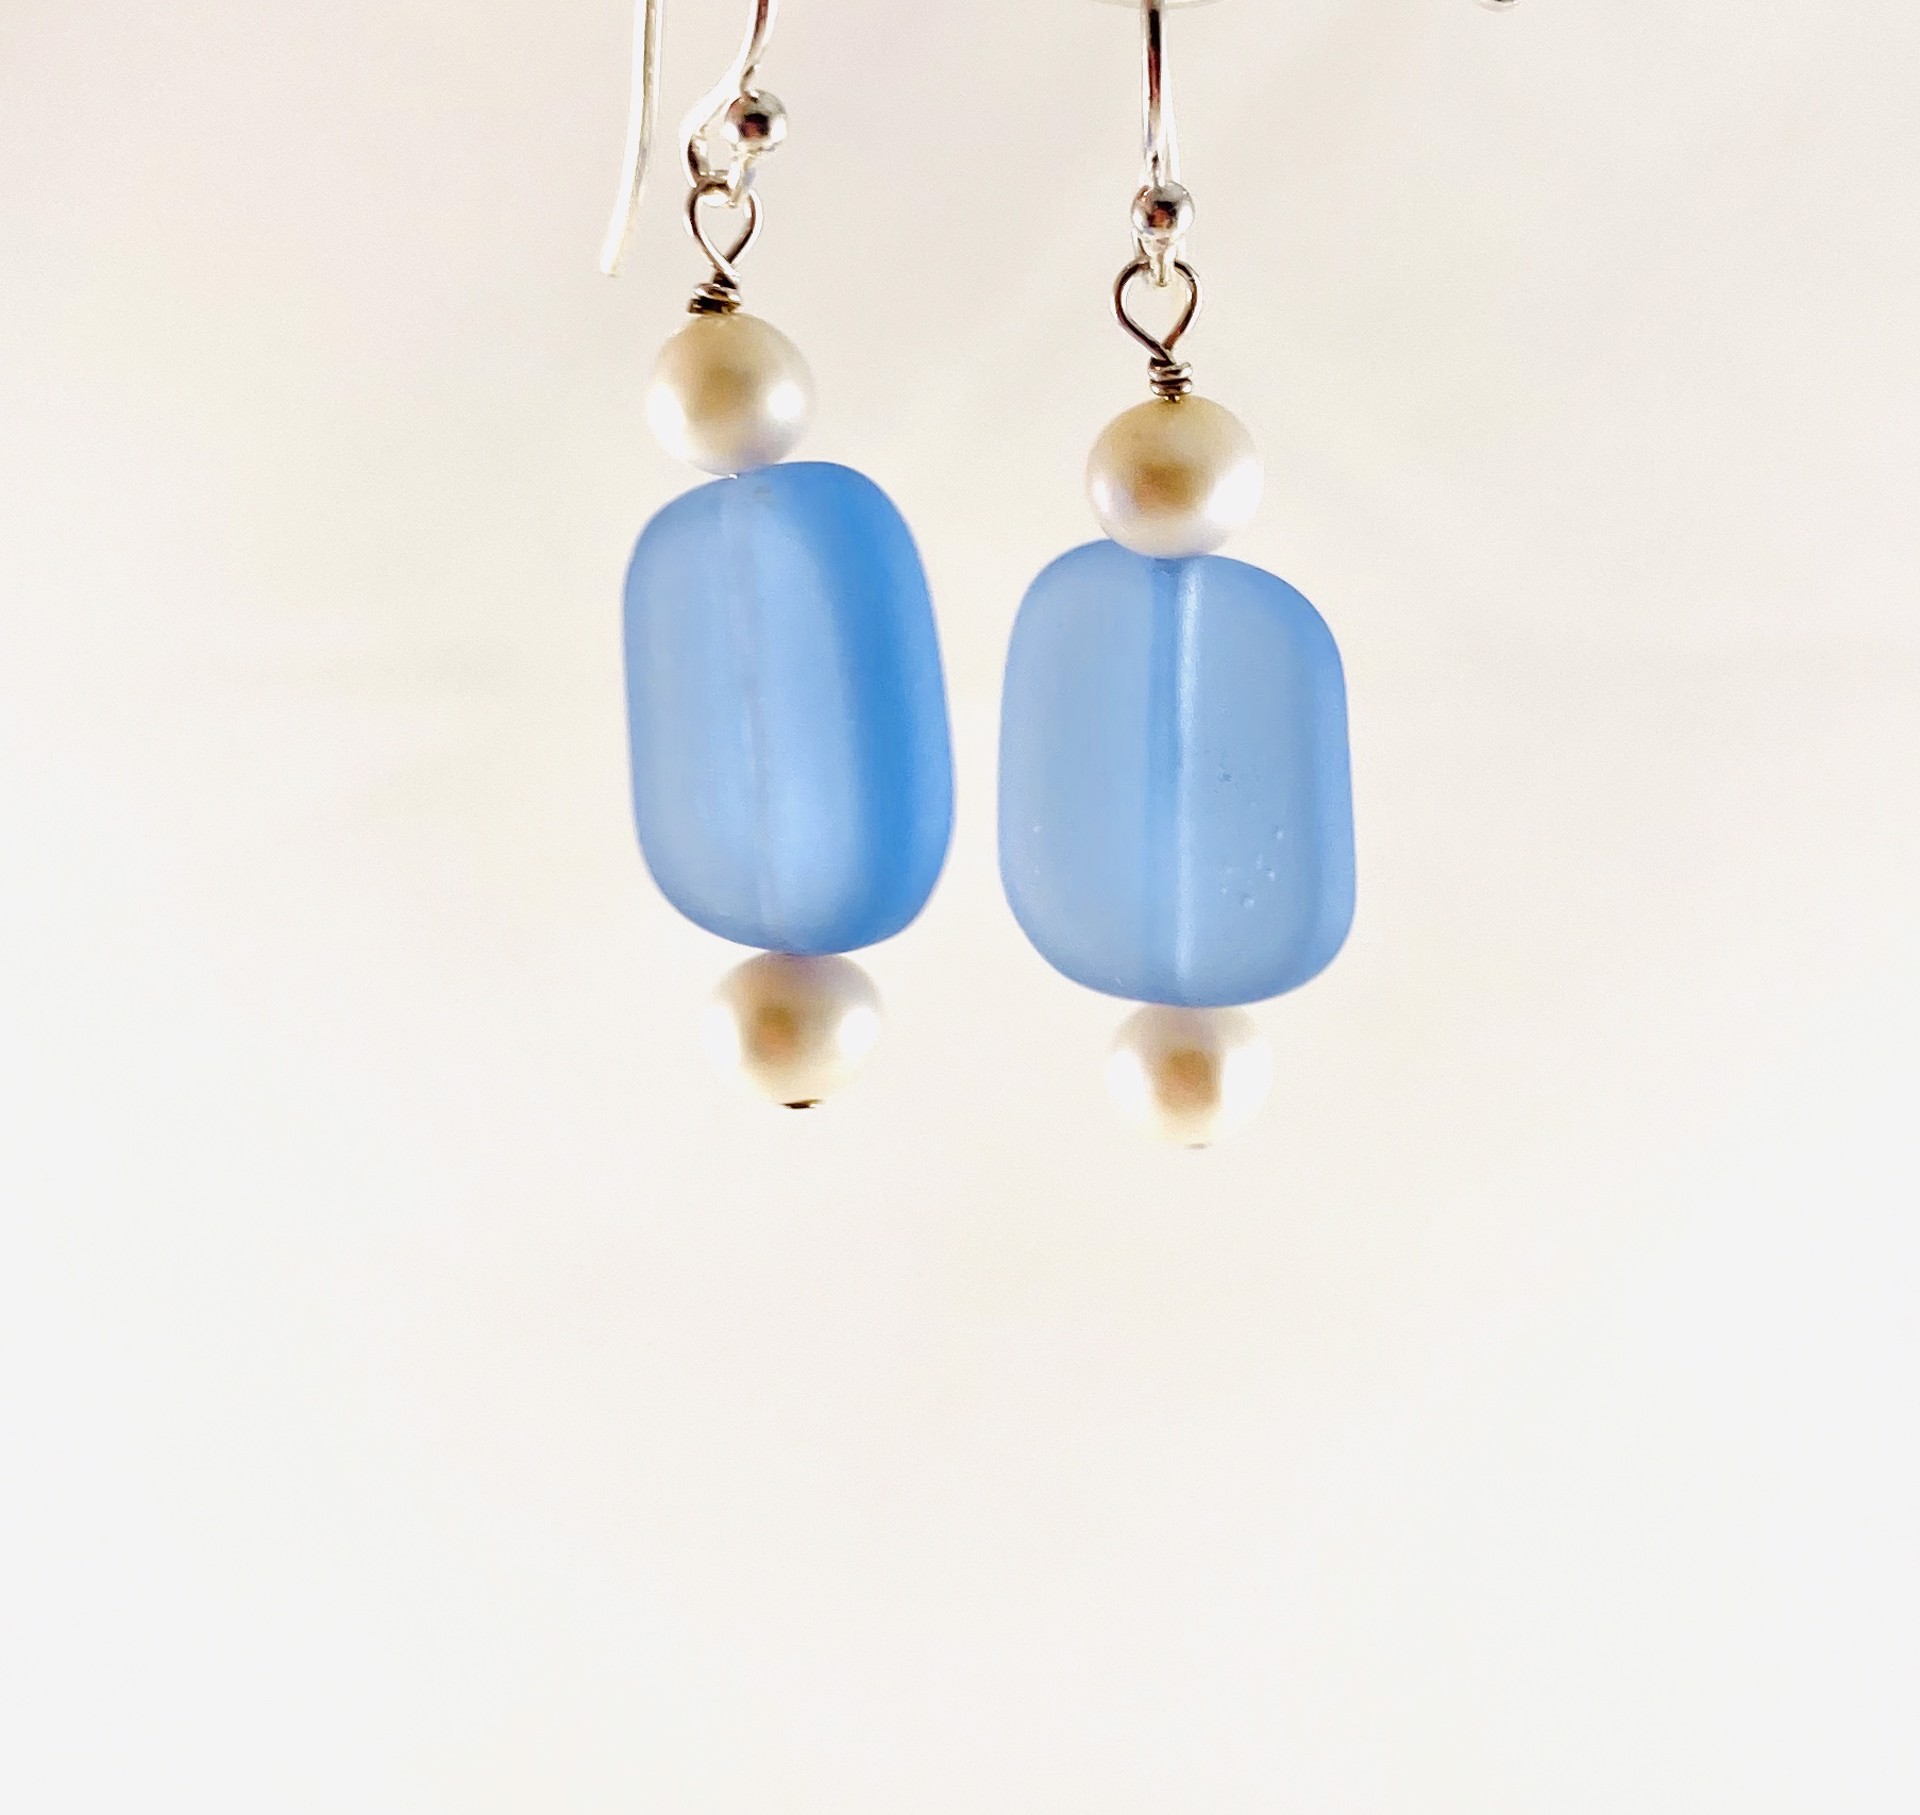 Faux Sea Glass and Pearl Earrings, 1n by Nance Trueworthy